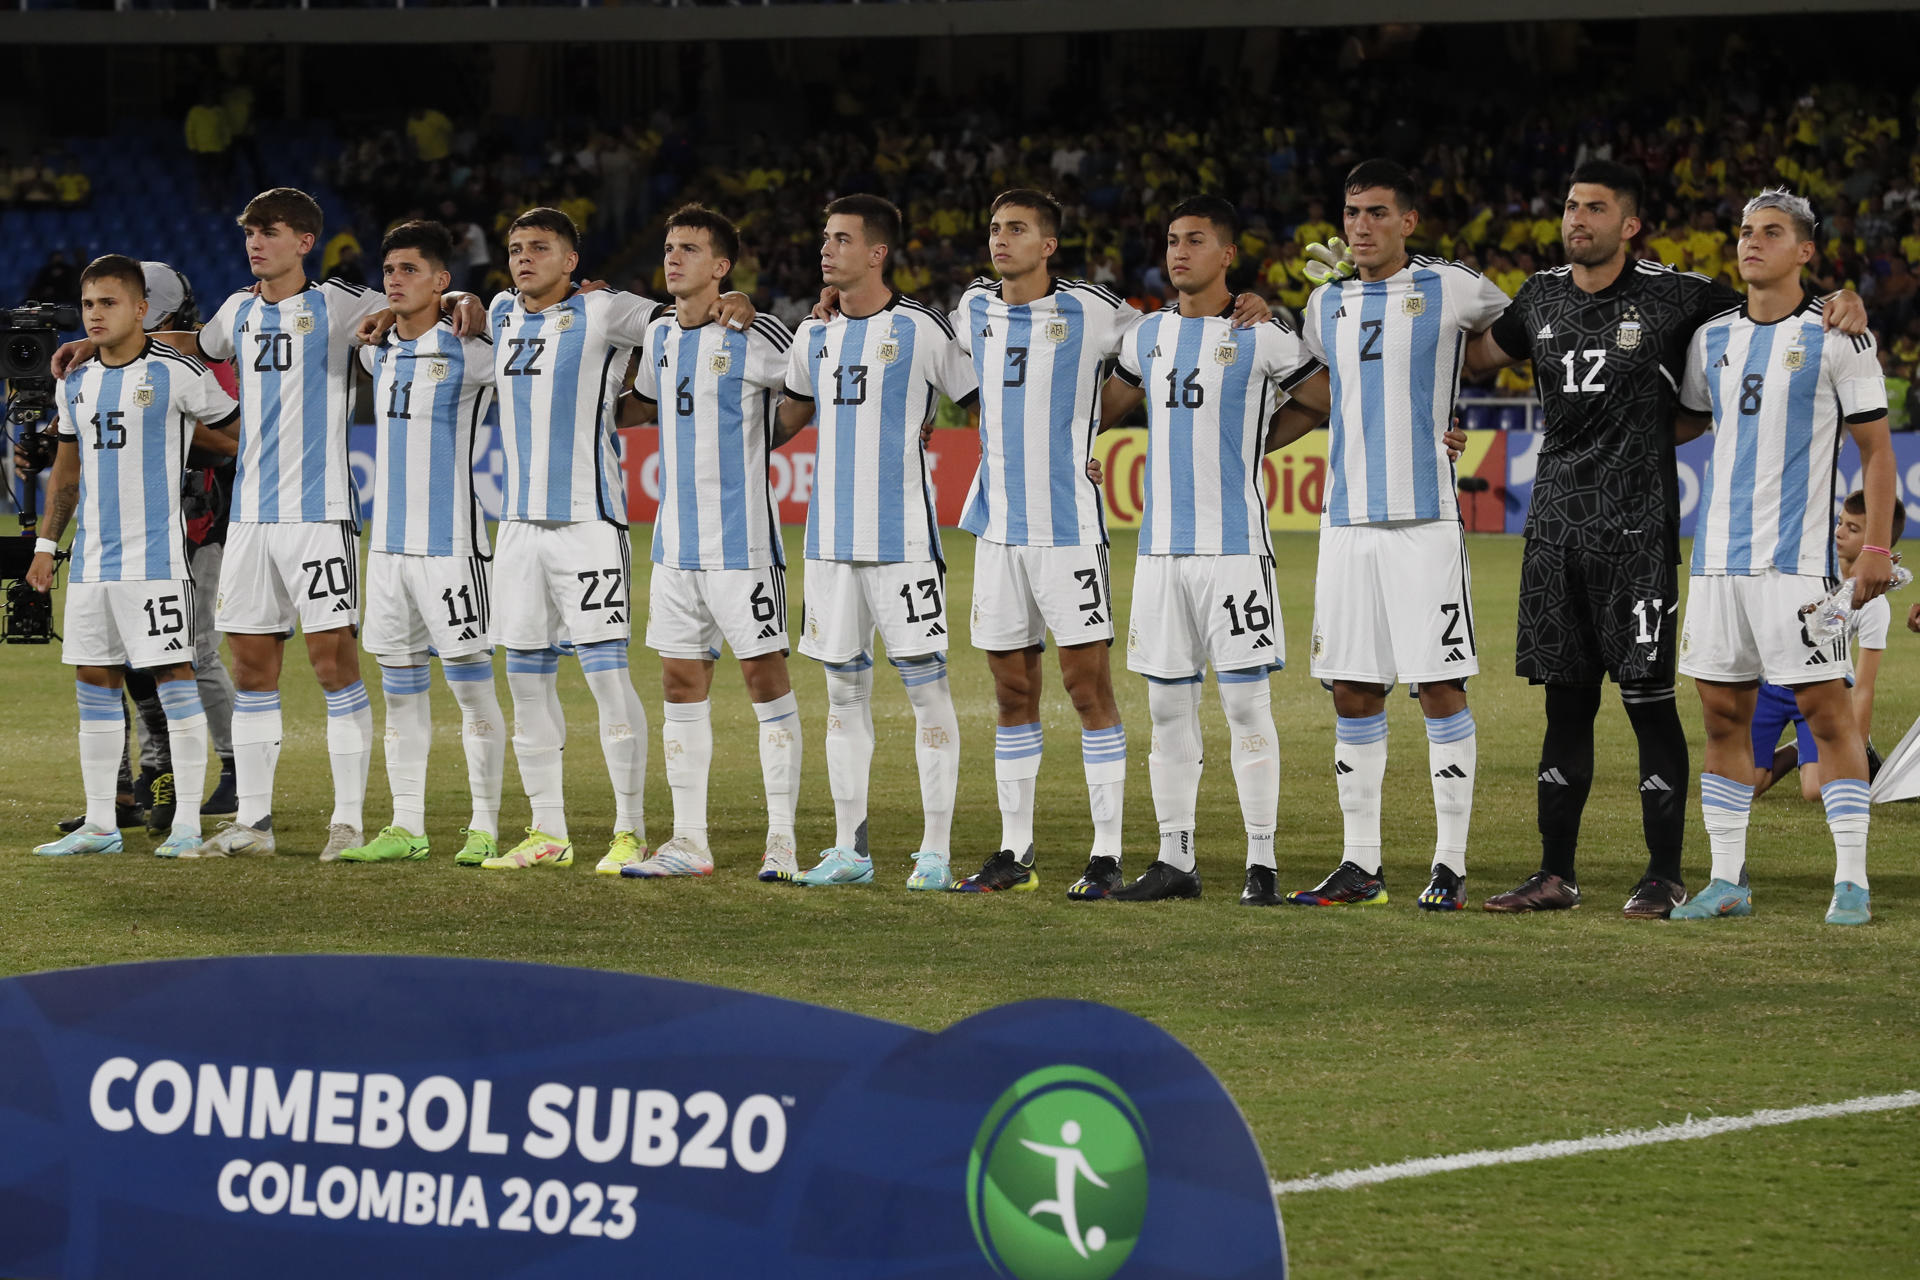 Jugadores de la selección Argentina Sub'20, en una fotografía de archivo. EFE/Carlos Ortega